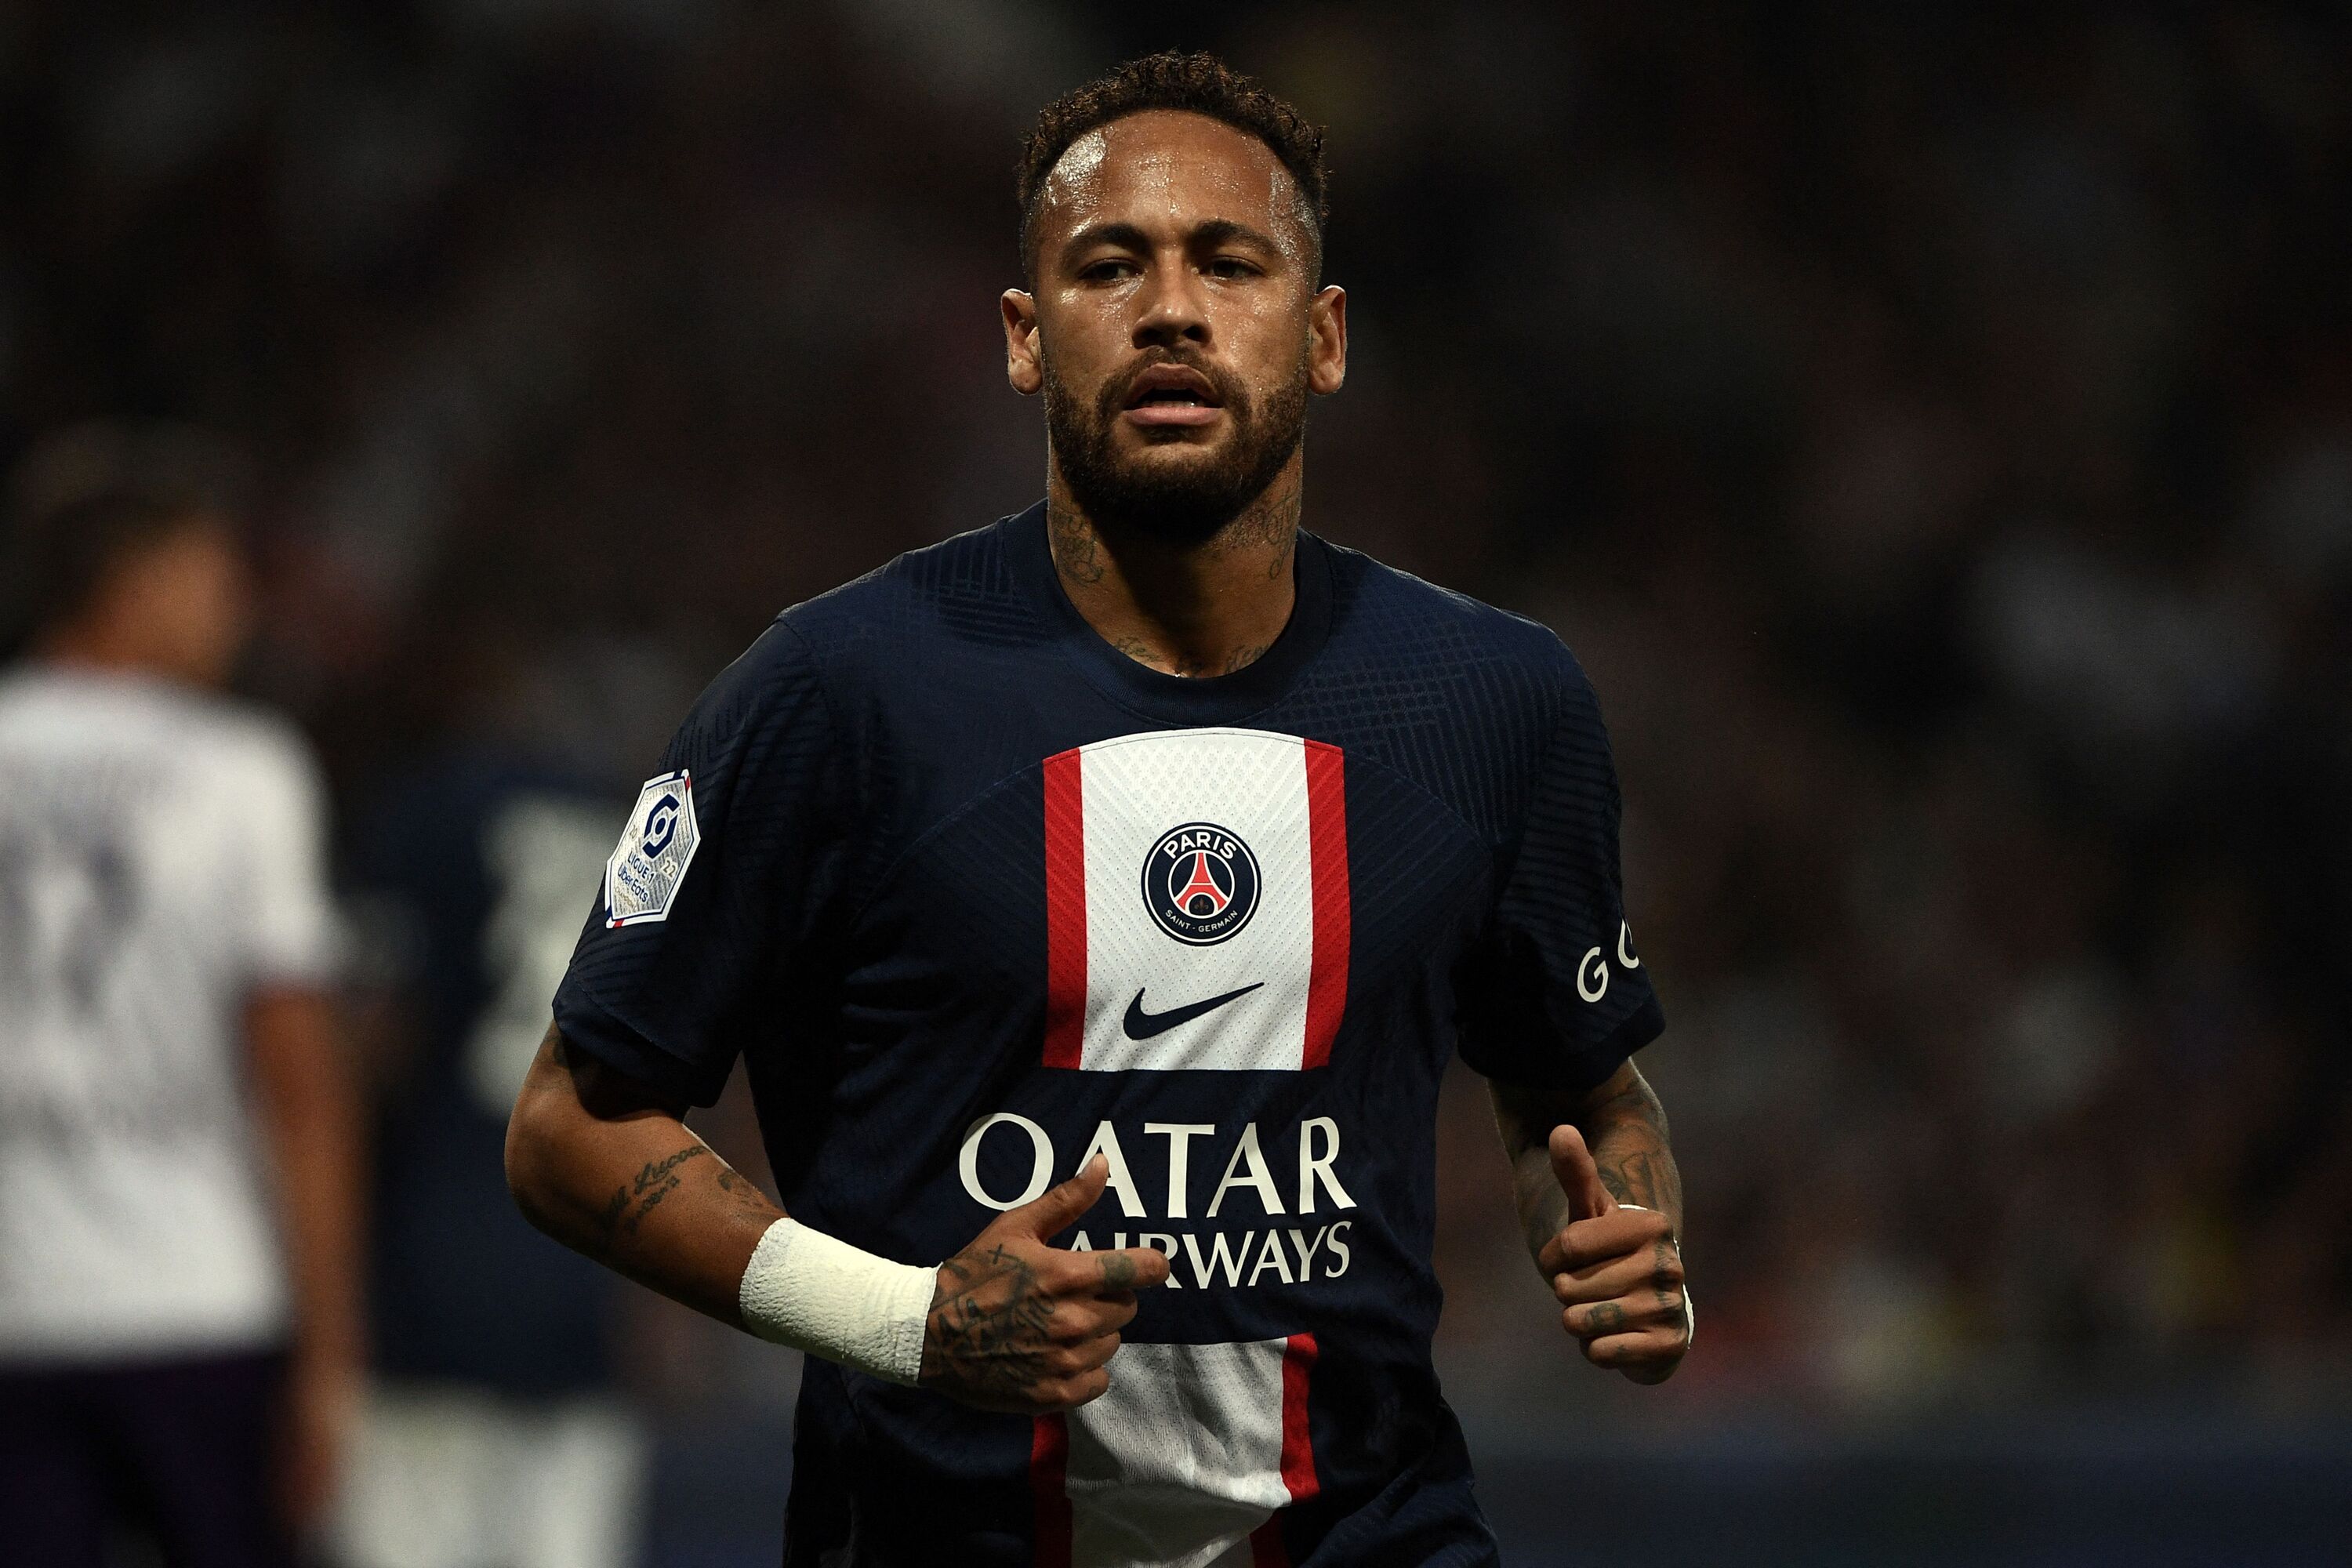 หลุยส์ คัมโปส เปิดเผยความจริงเกี่ยวกับข่าวลือเรื่องการออกจาก Neymar ในช่วงหน้าต่างโอนฤดูร้อน